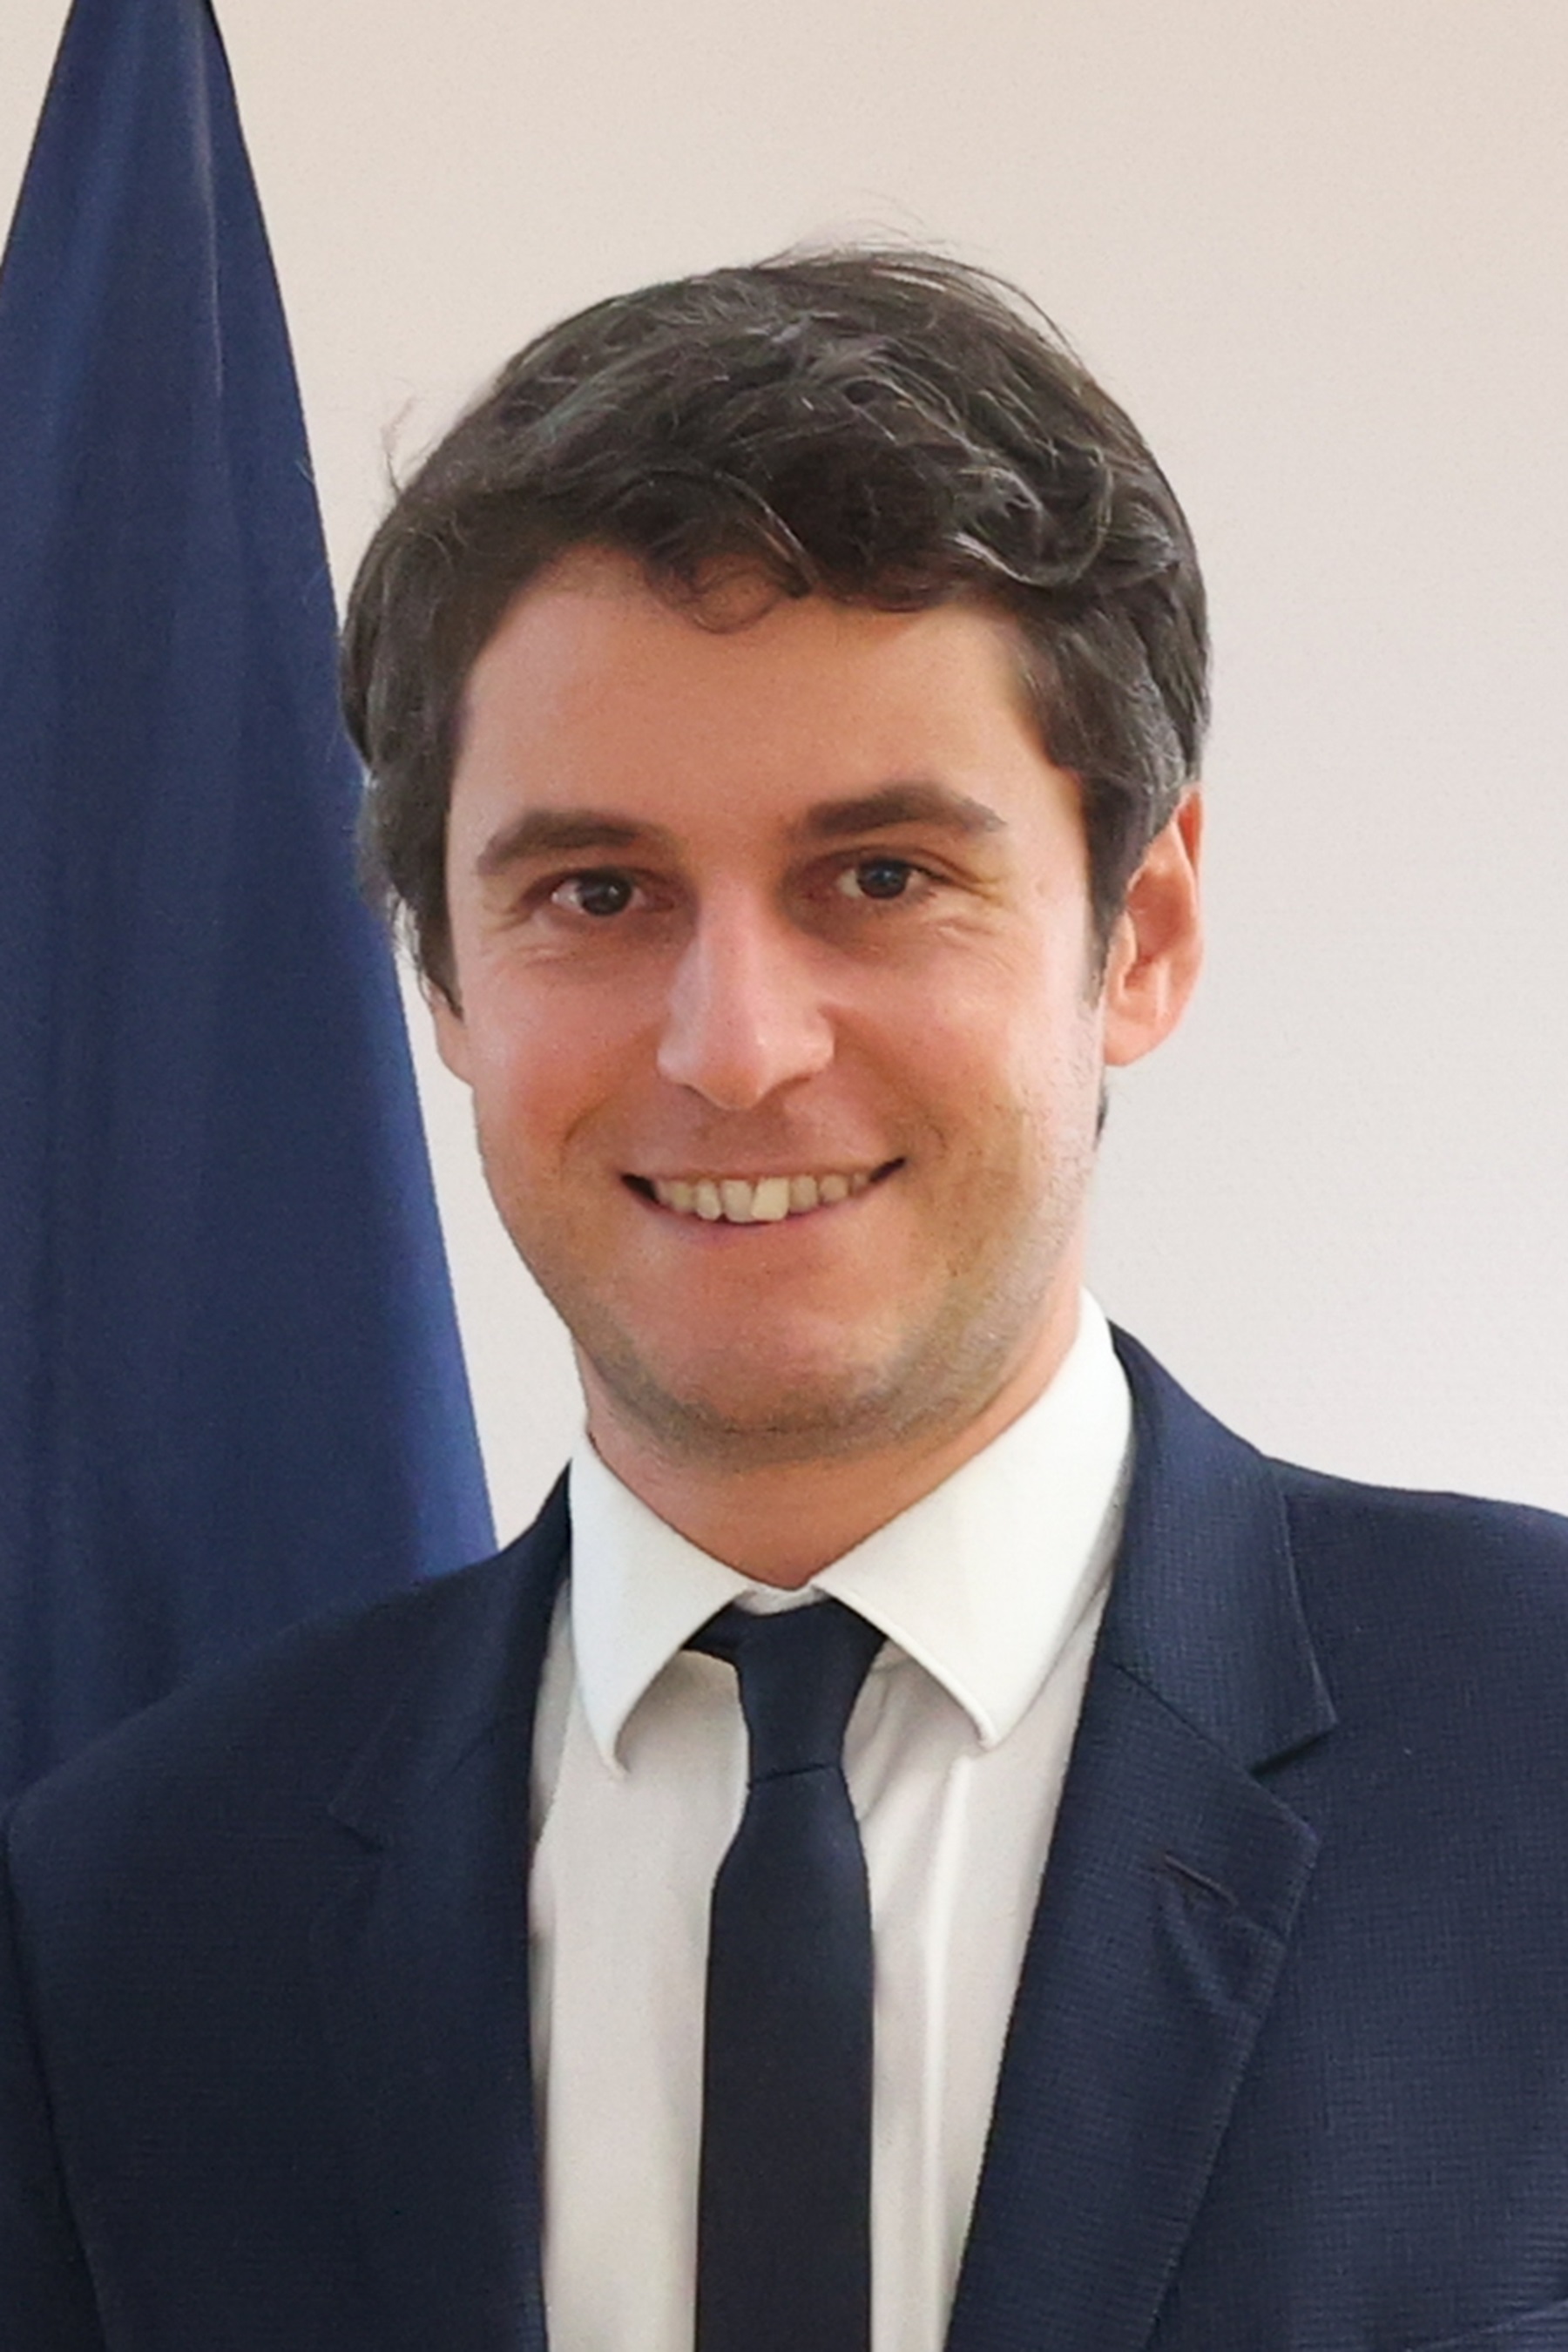 El nuevo primer ministro de Francia: Gabriel Attal, de 34 años